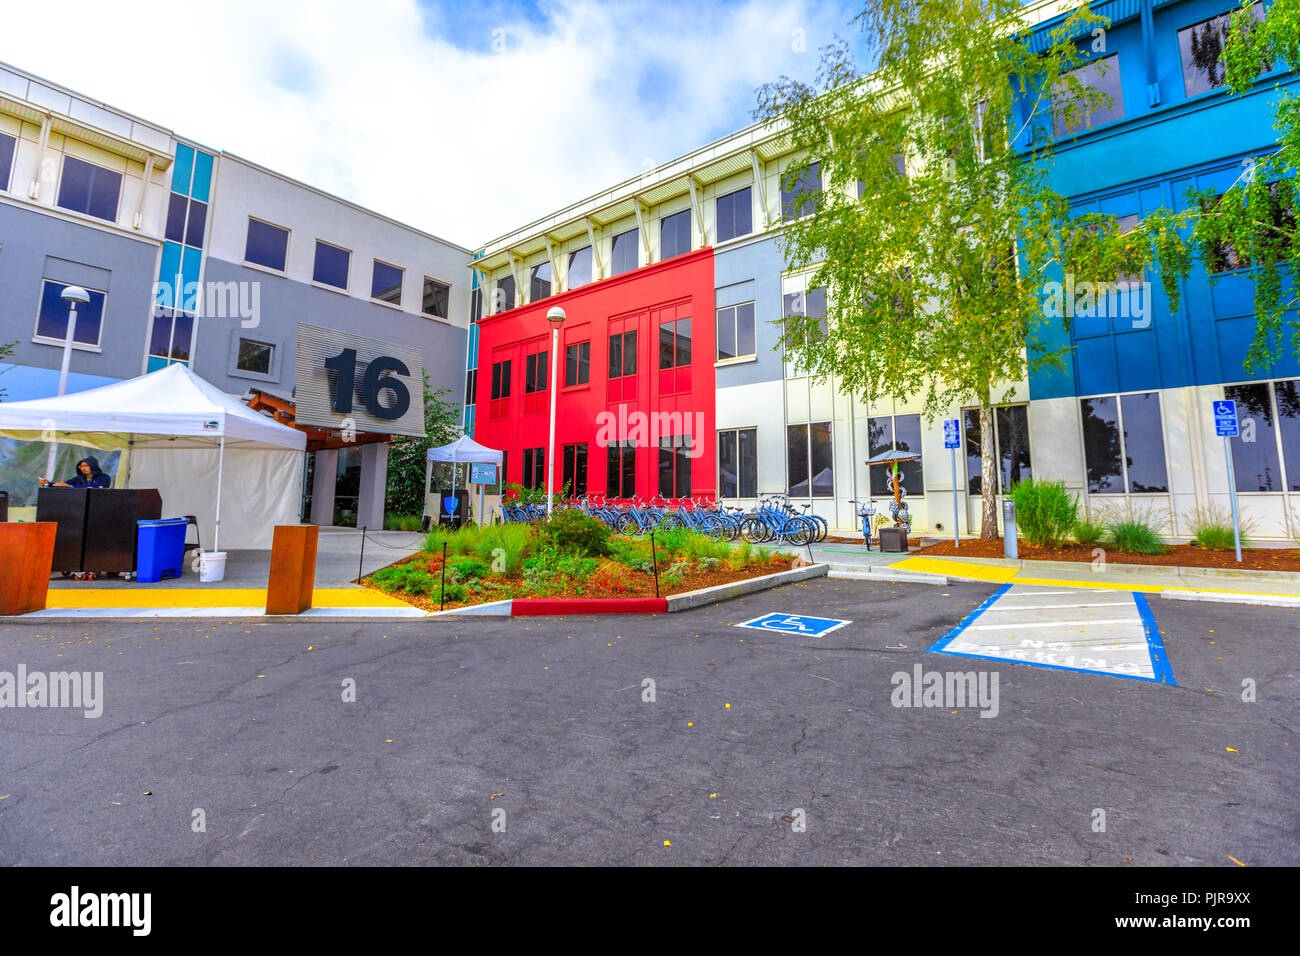 Menlo Park, Kalifornien, USA - 13. August 2018: Main Campus von Facebook Headquarters, Gebäude 16, Silicon Valley, San Francisco Bay Area. Facebook ist das weltweit führende Social Network unternehmen. Stockfoto